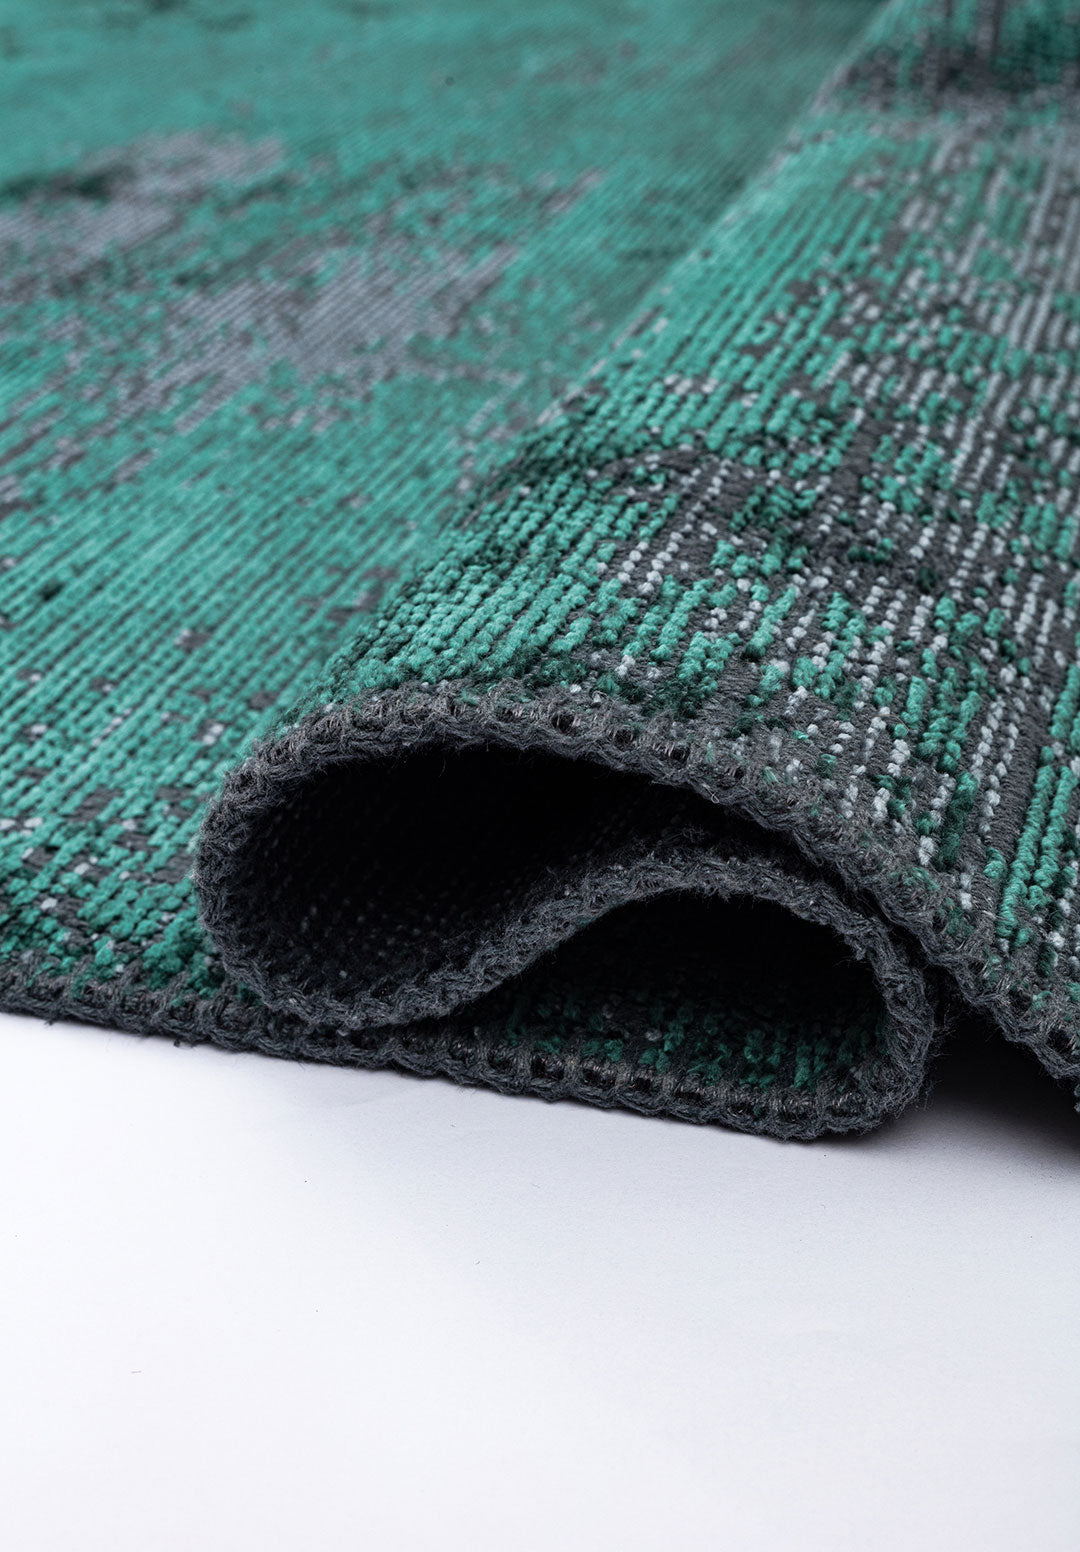 Surface Blue - Dark Green Rug Rugs - Venetto Design Venettodesign.com